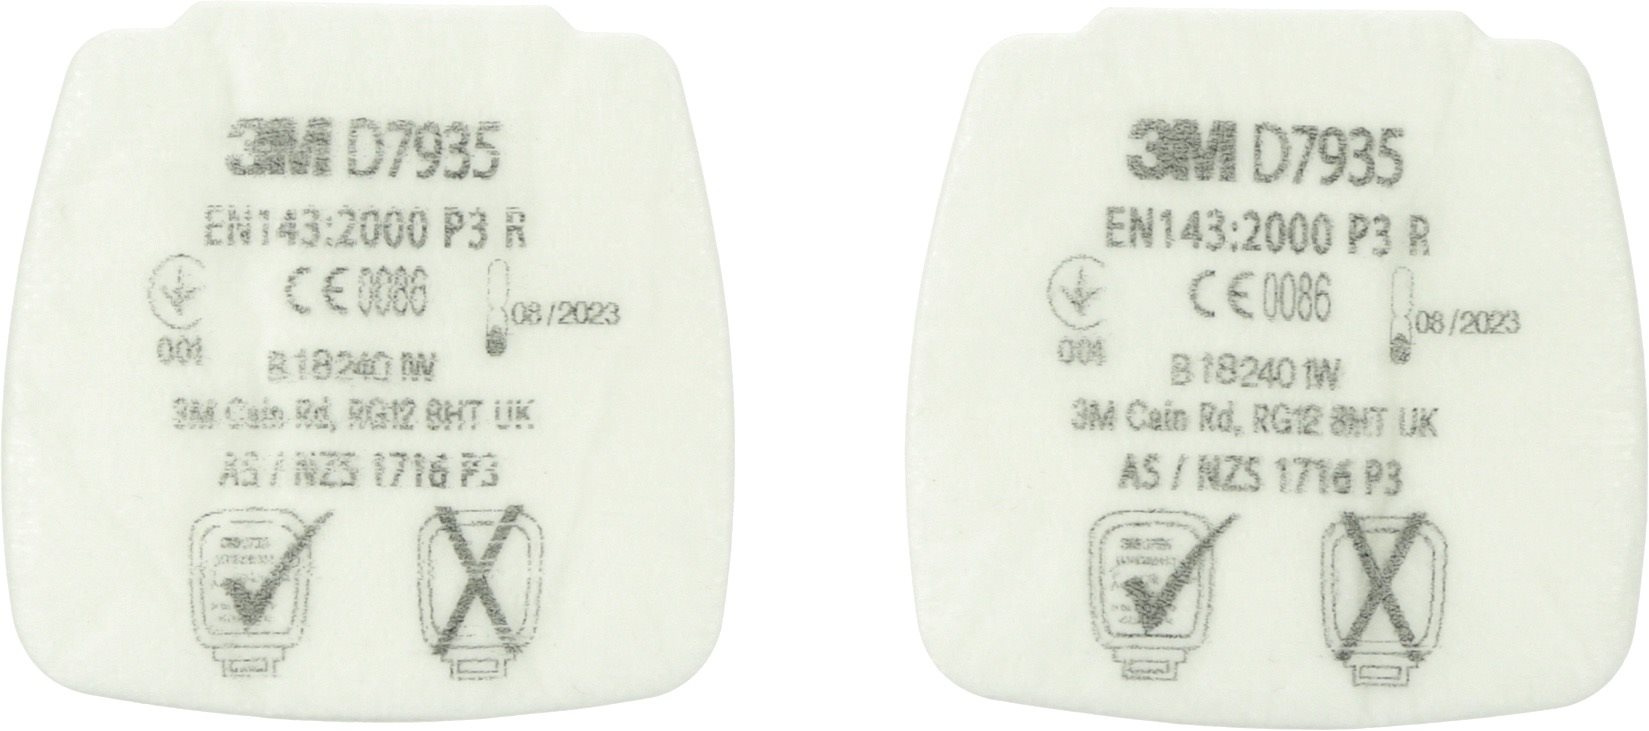 Légzésvédő szűrőbetét 3M Secure Click D7935 P3 R részecskeszűrő - 4db-os csomag